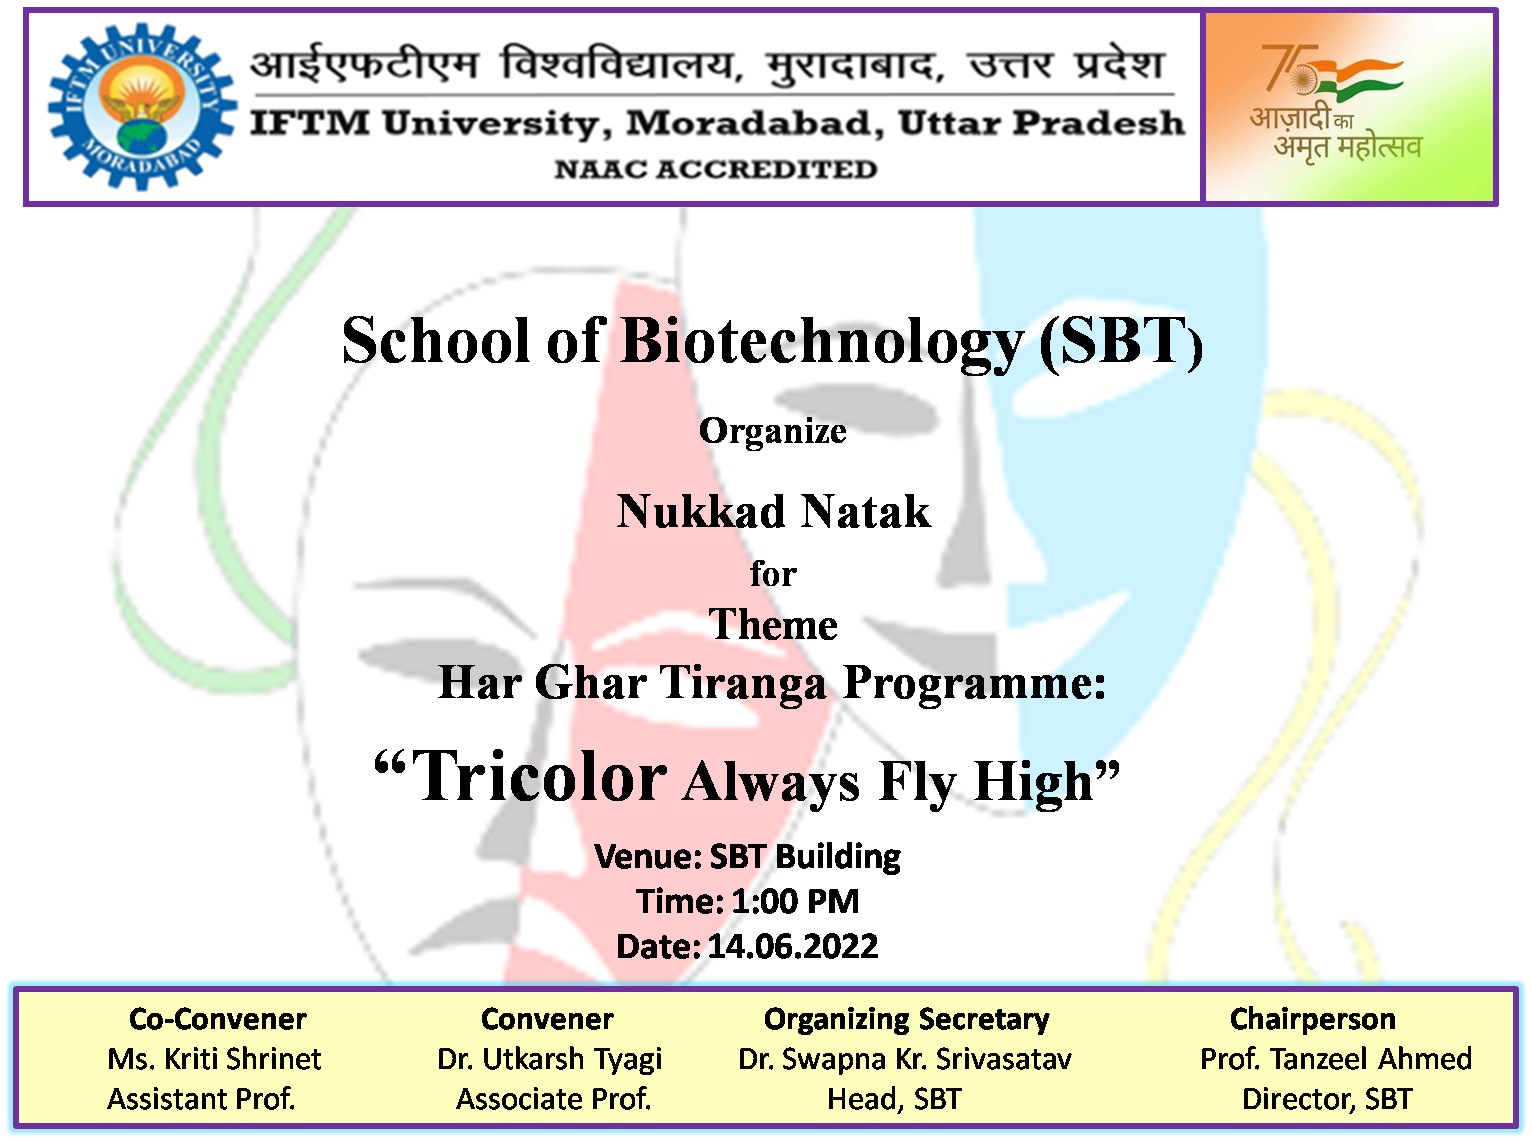 Nukkad Natak Under Har Ghar Tringa Programme Tricolor always fly high